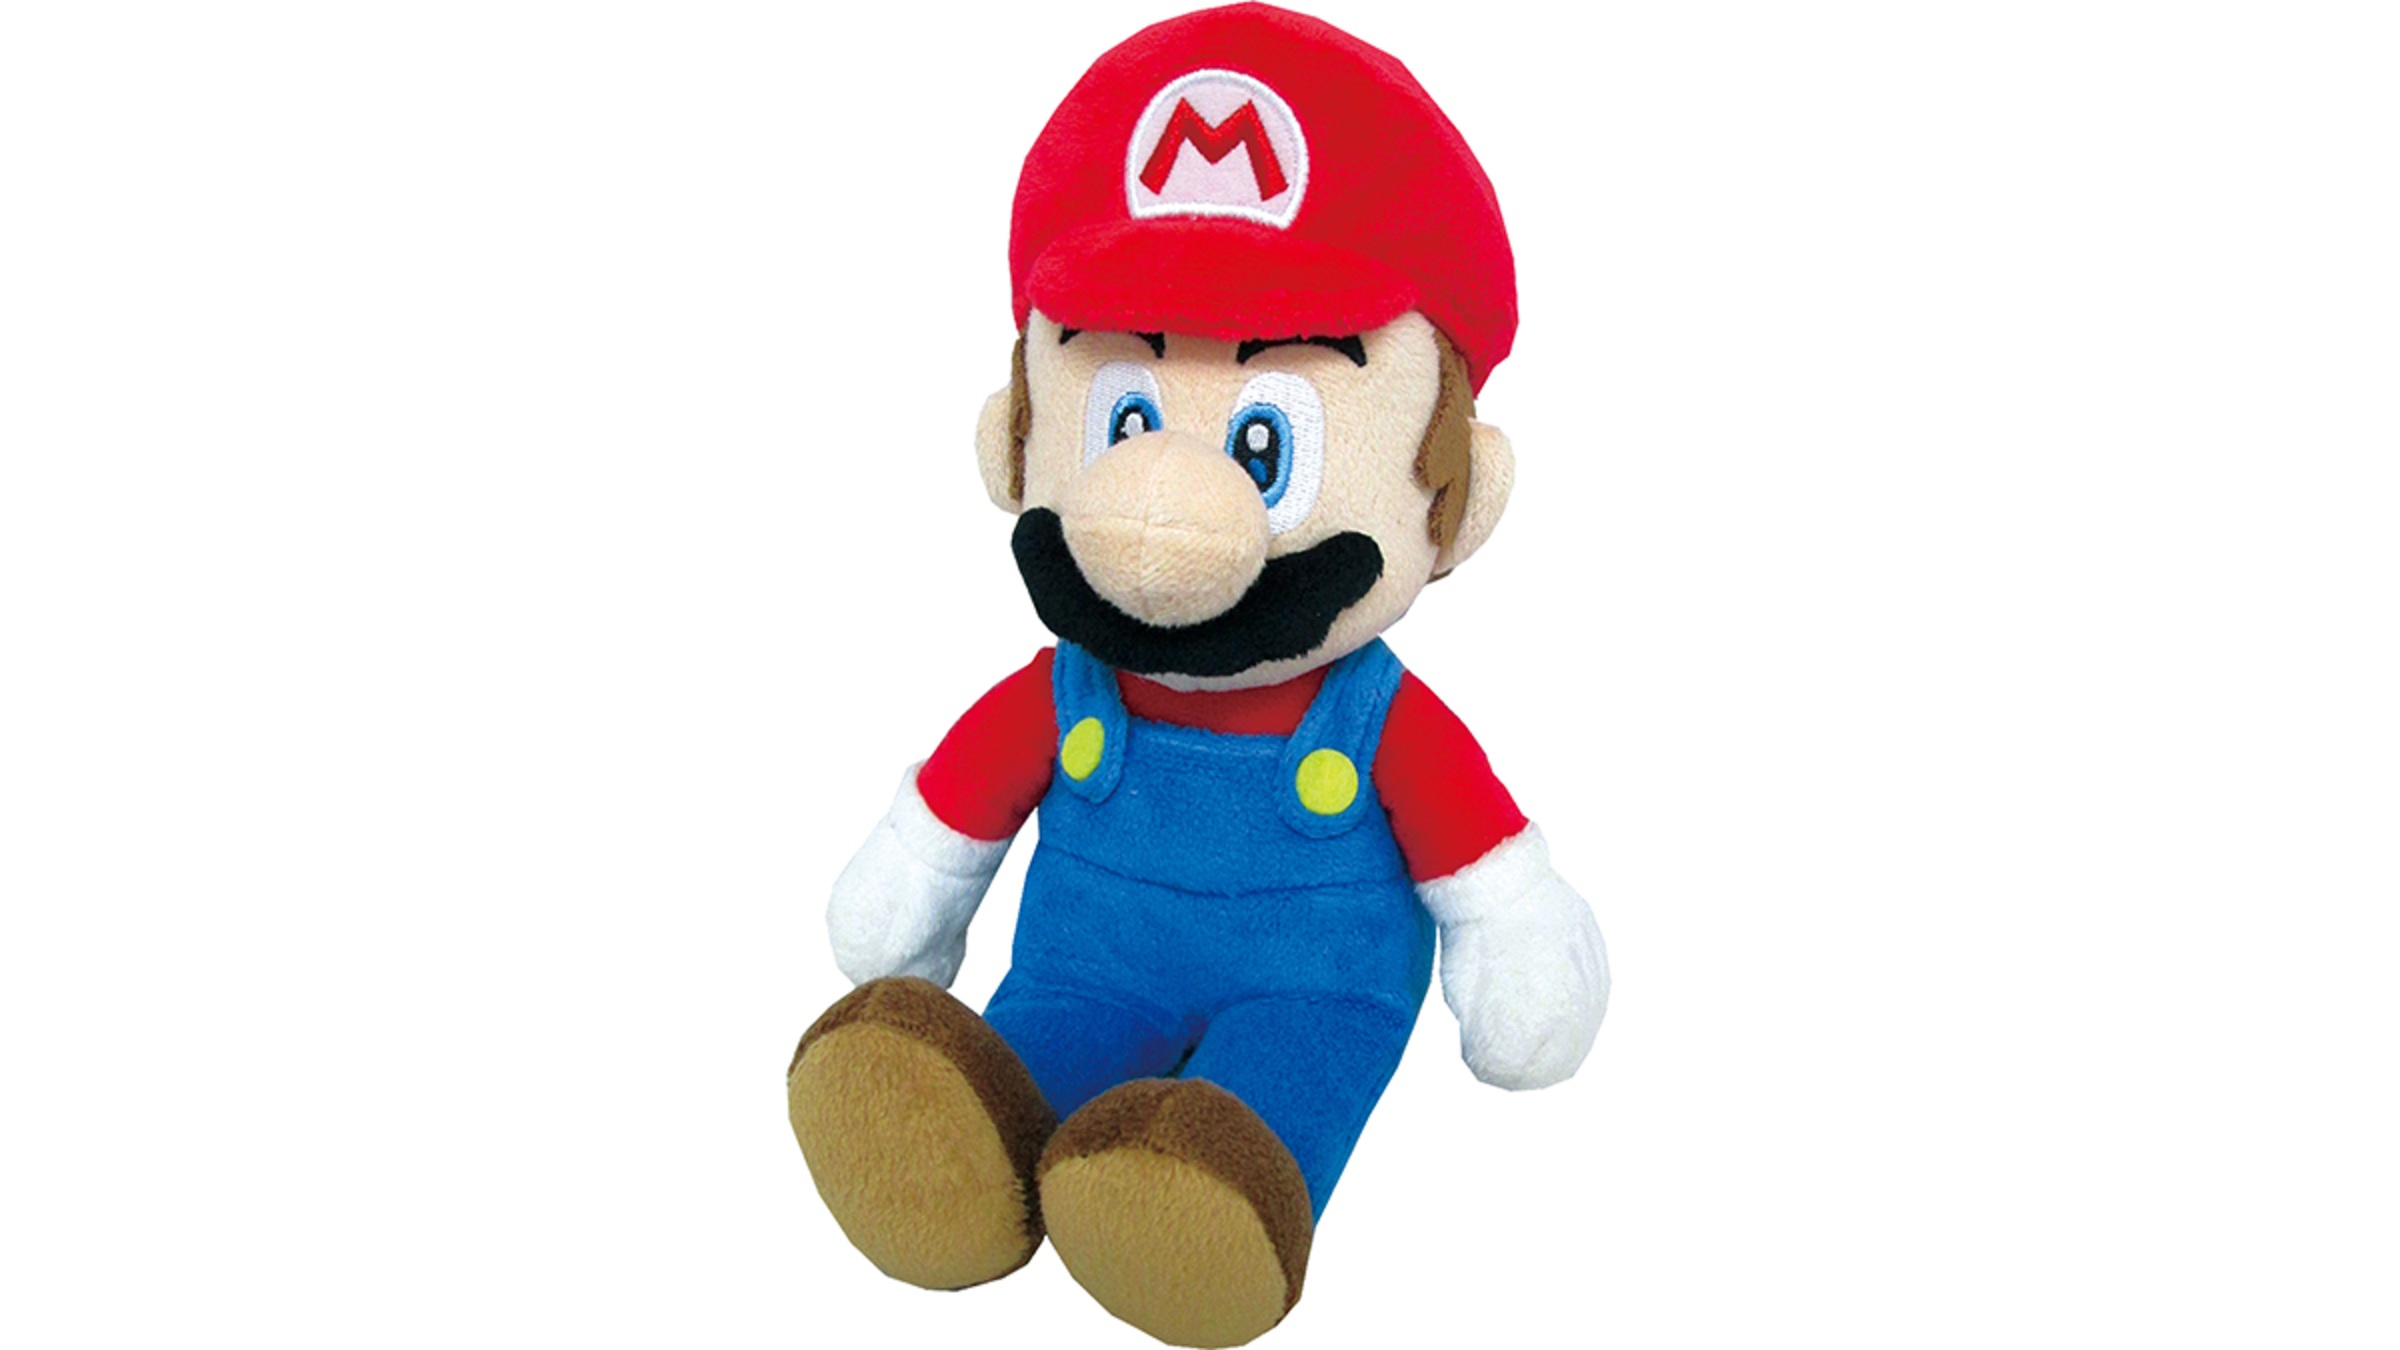 Peluche mario super Mario bros officiel 50 cm